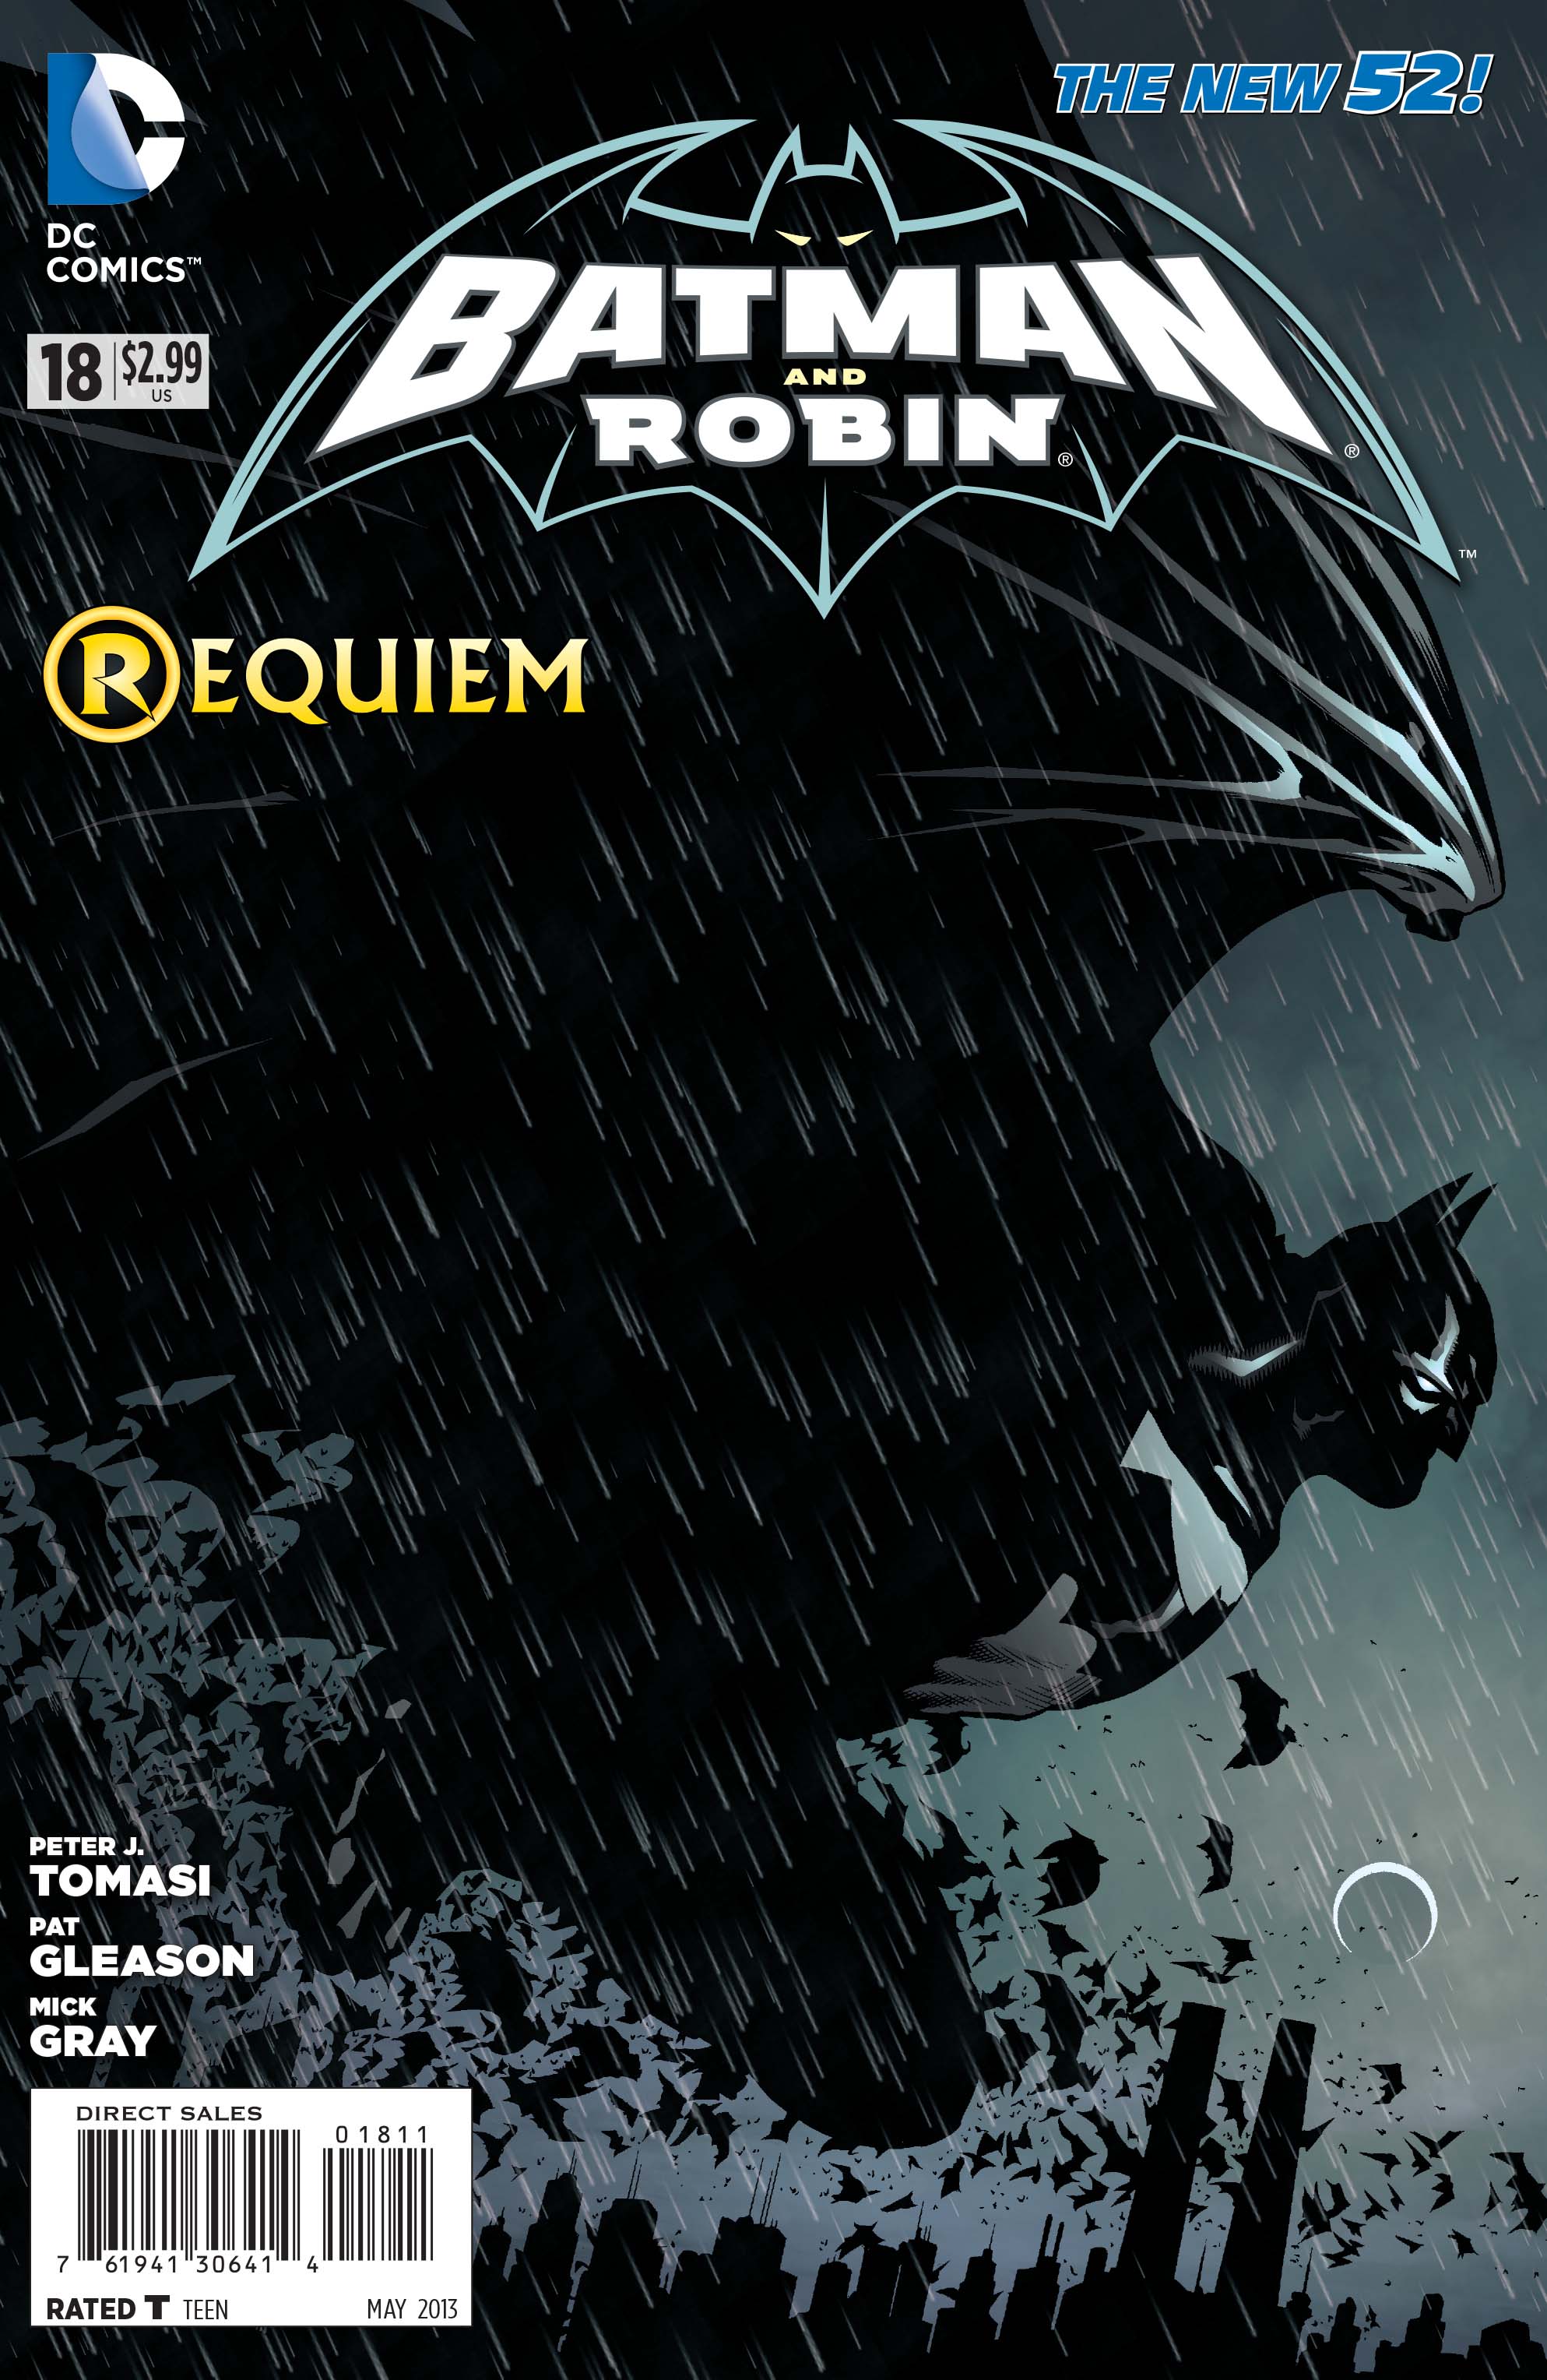 New 52 - Batman and Robin #18 review | Batman News